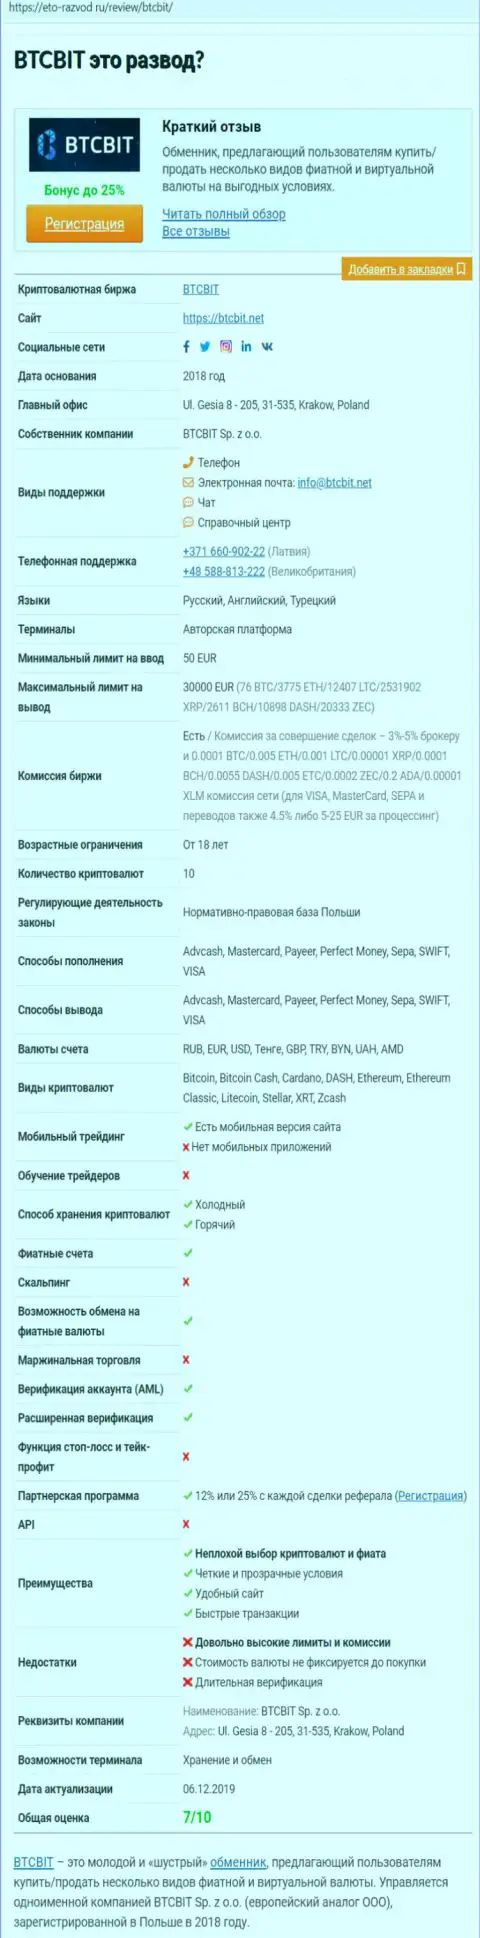 Справочная информация об организации BTCBit на web-площадке Eto-Razvod Ru